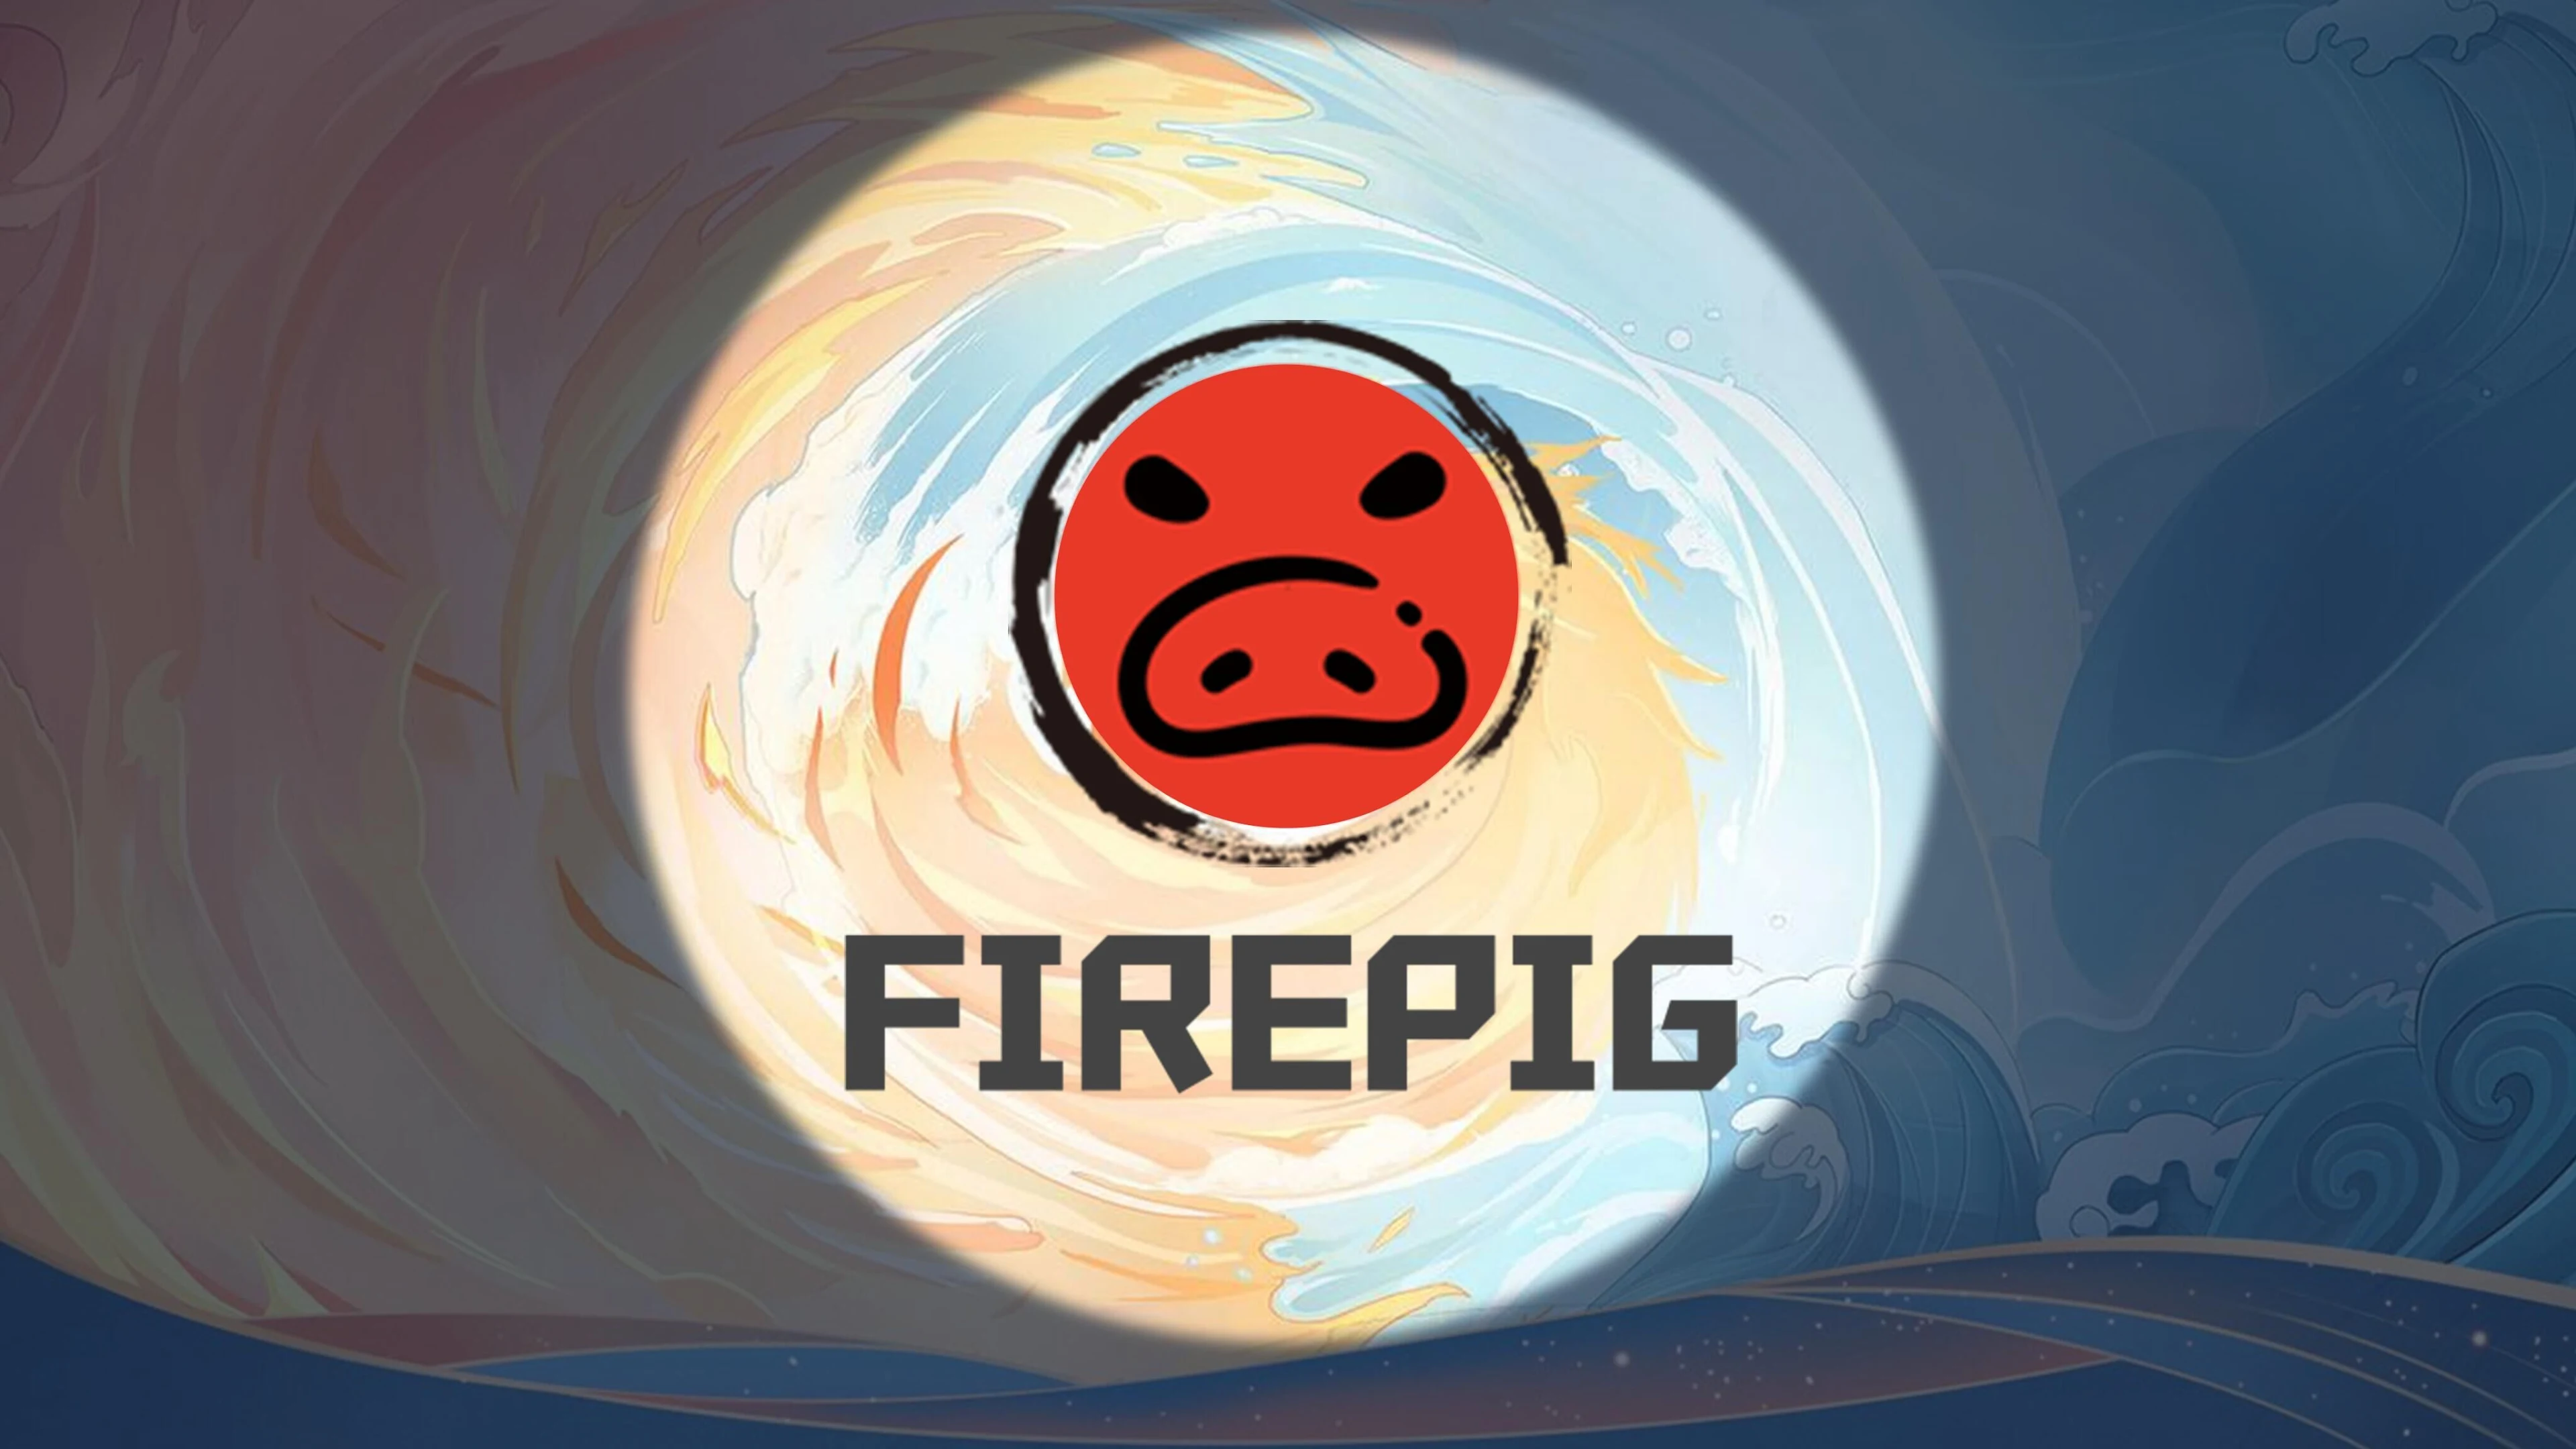 FirePiggy on the App Store